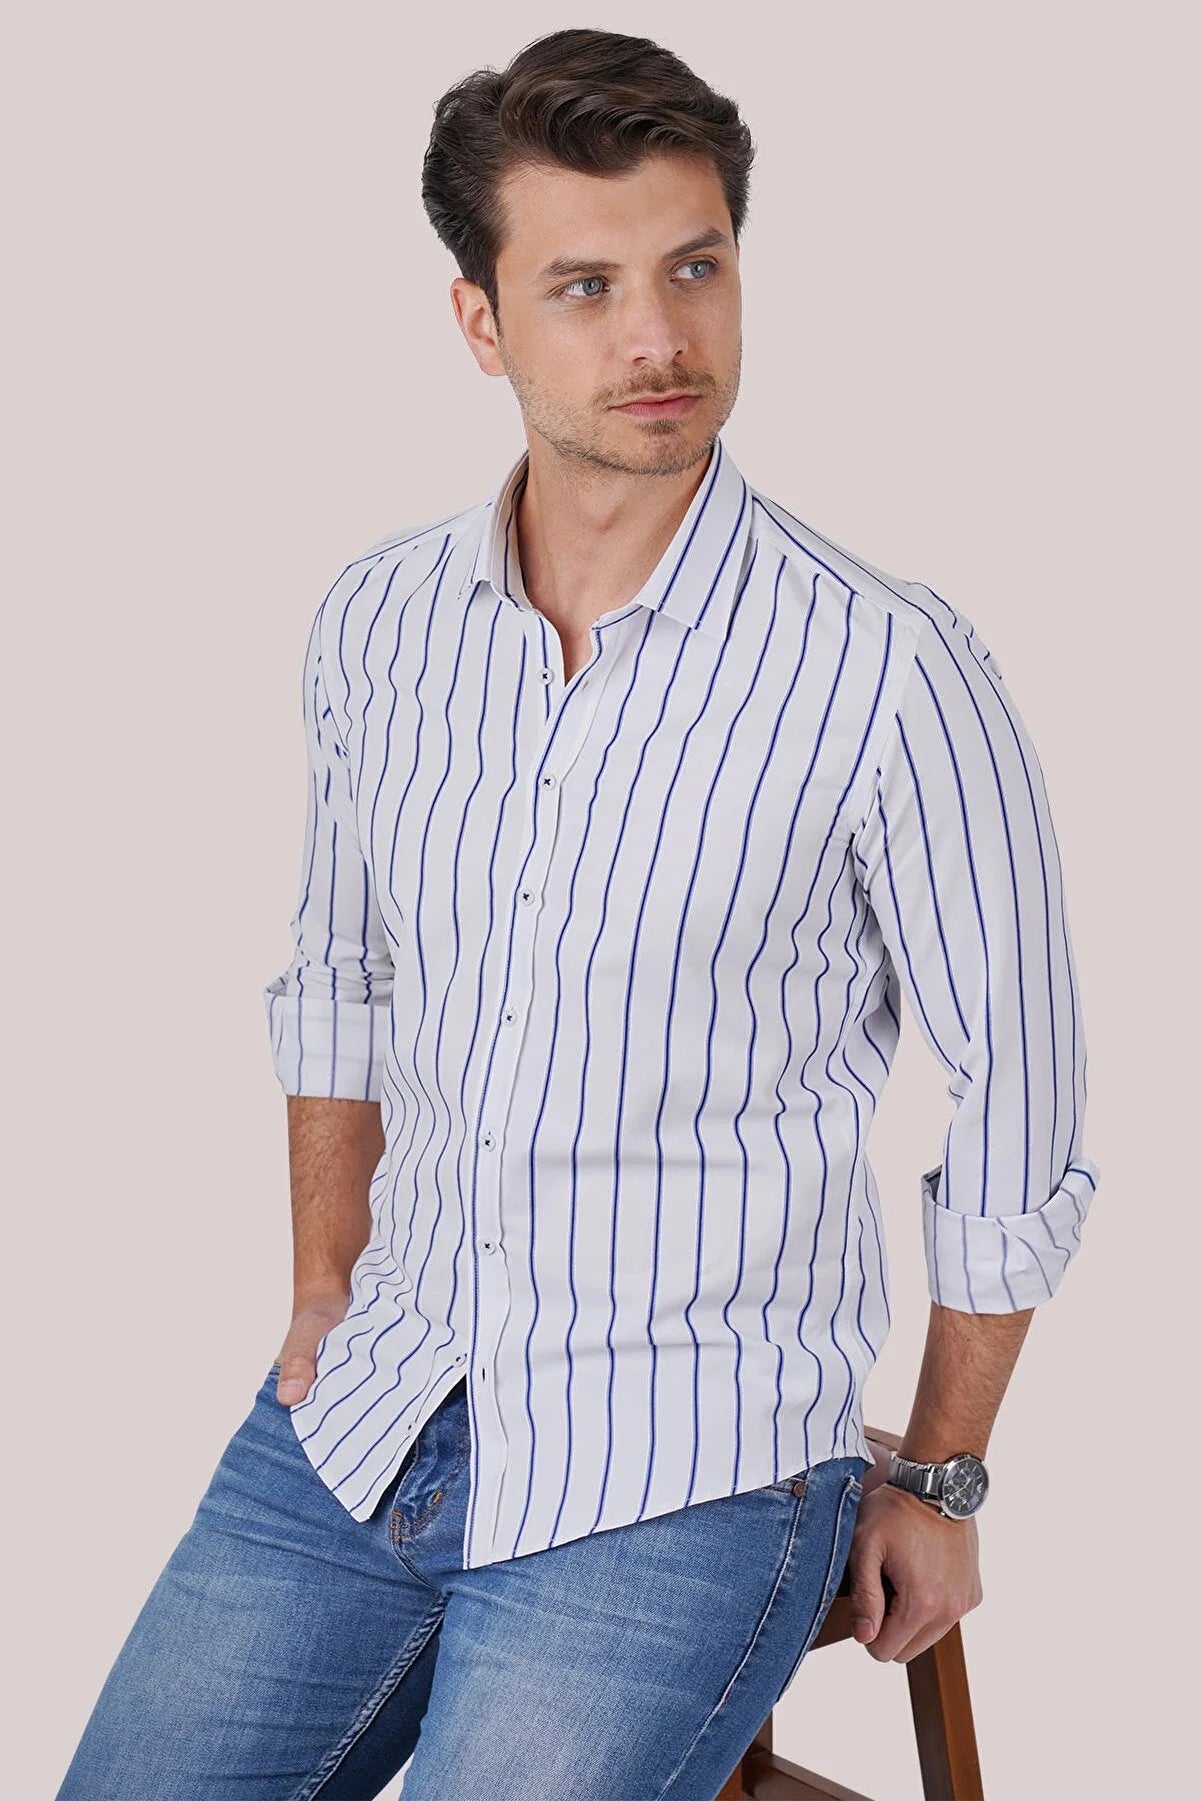 Sharp & Sleek Men's Business Shirt: Long Sleeve